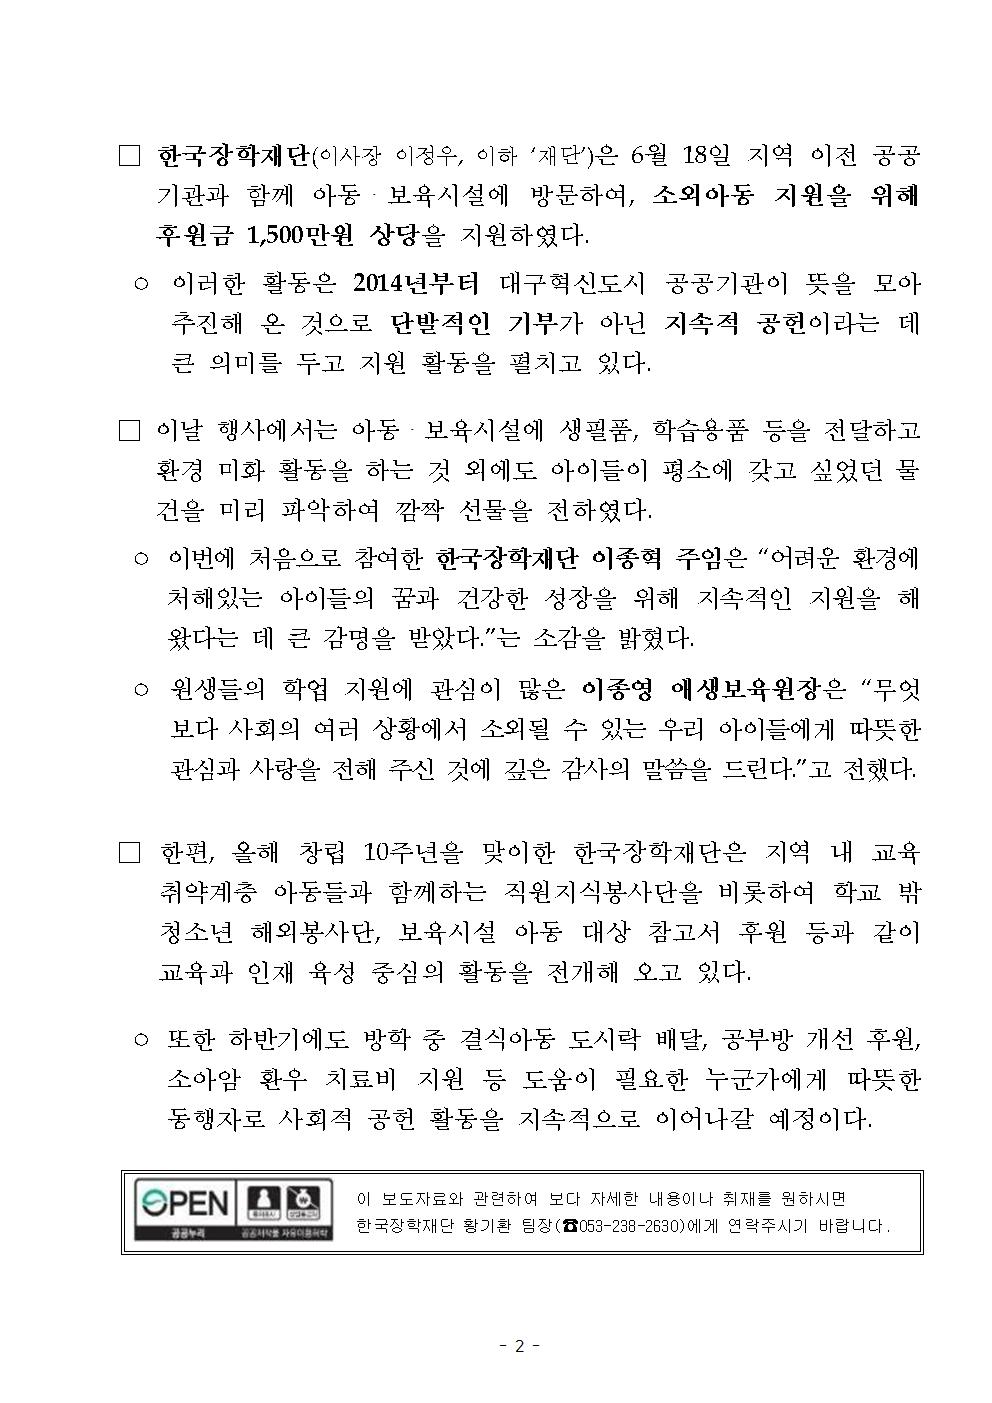 06-18(화)[보도자료] 한국장학재단 대구 이전 공공기관과 지역 보육시설 후원002.jpg